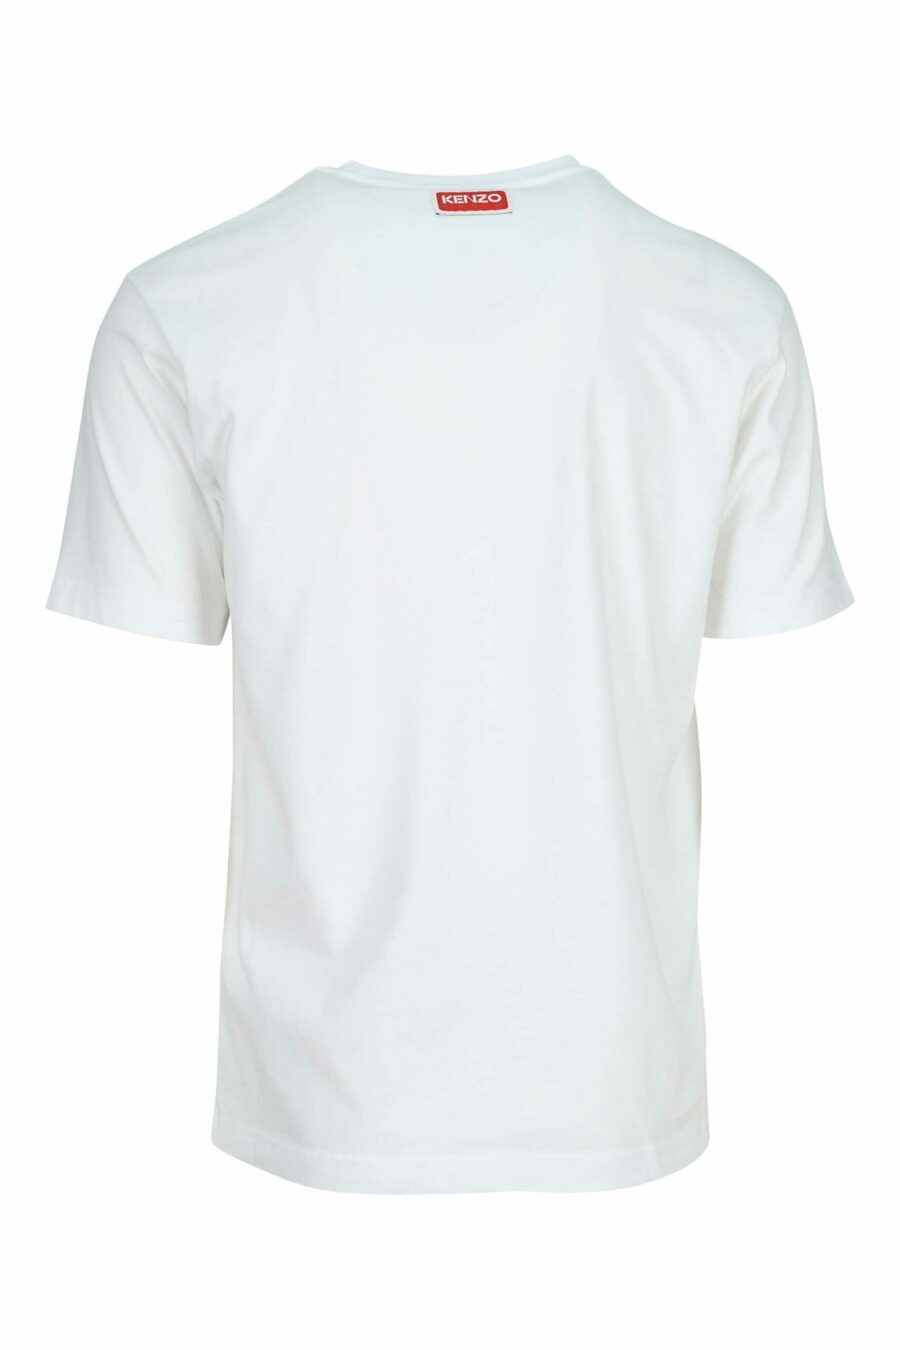 Weißes T-Shirt mit mehrfarbigem Tiger-Maxilogo - 3612230625136 1 skaliert